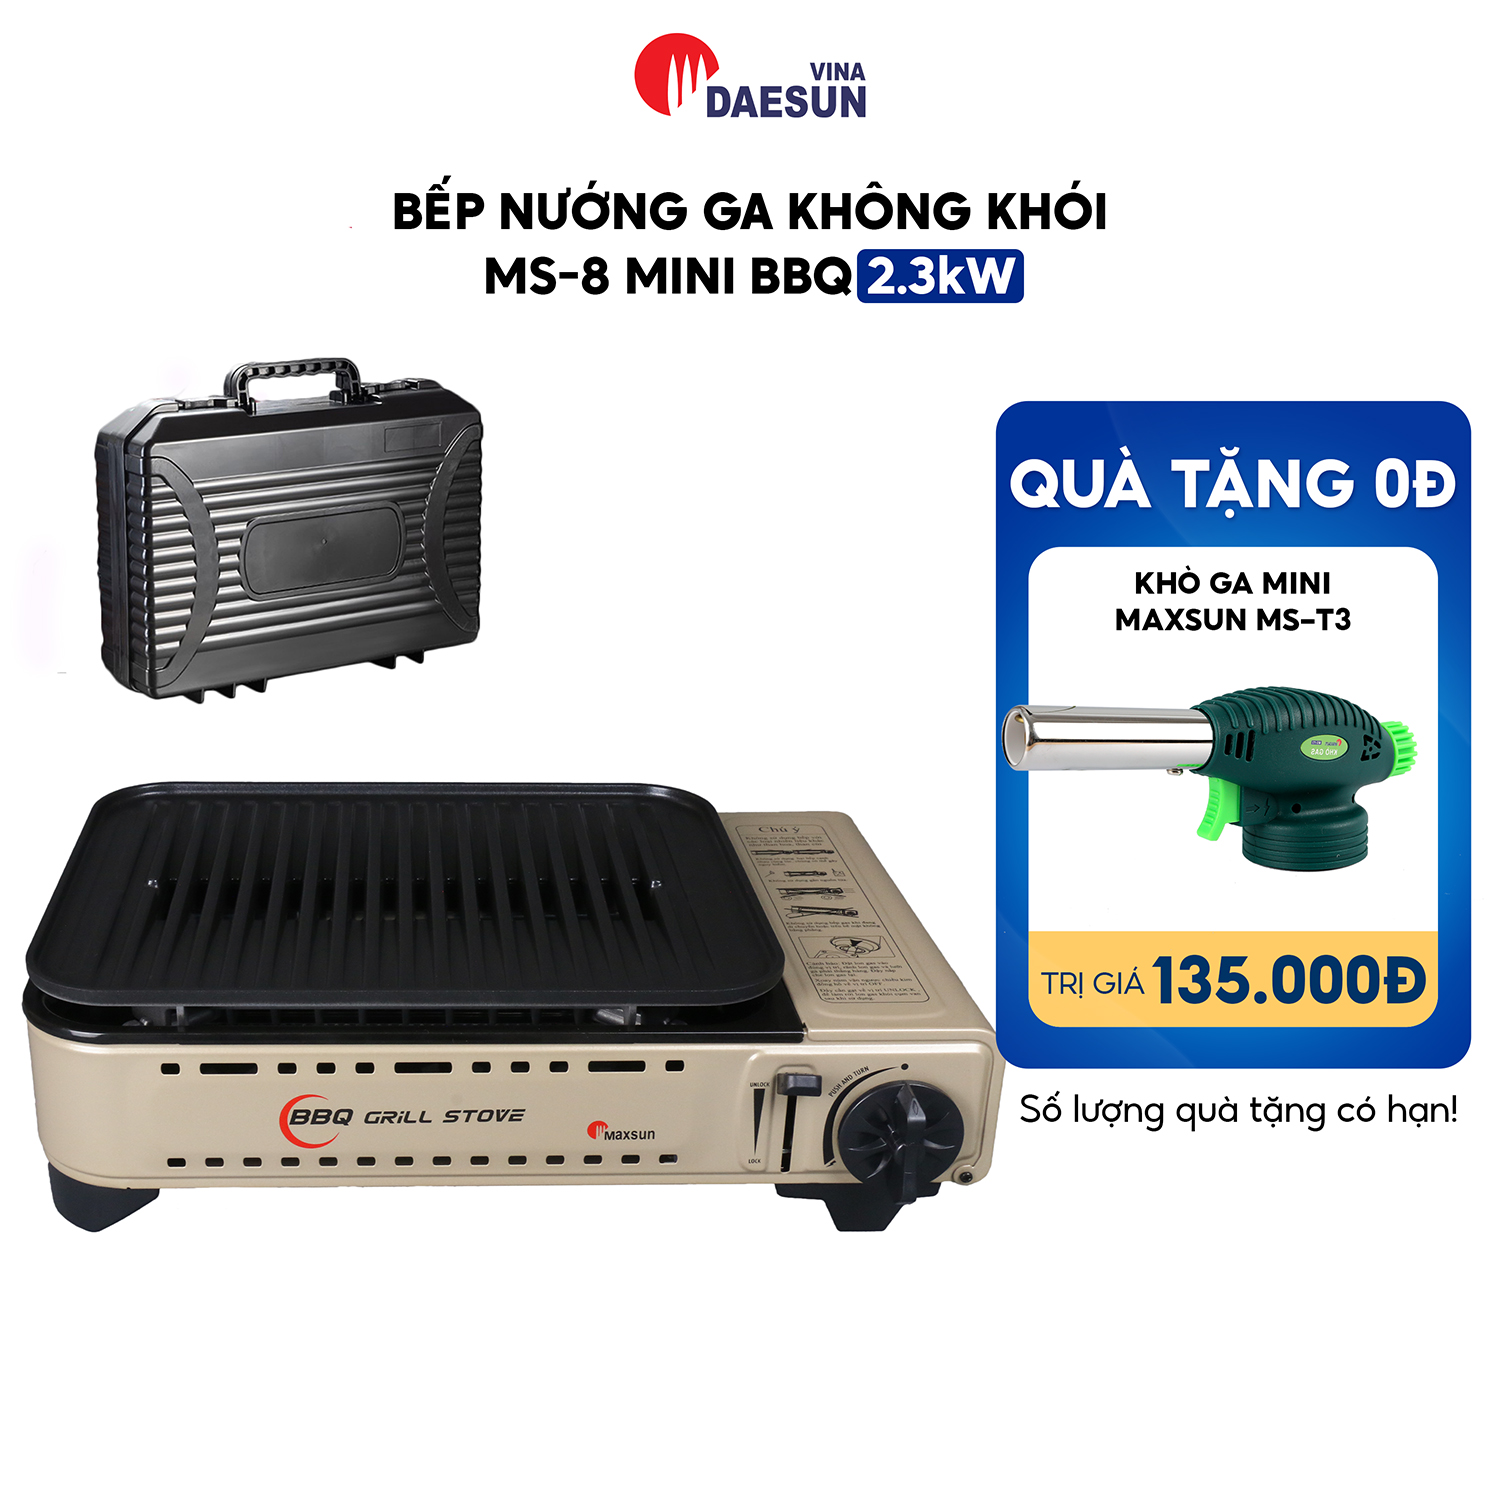 Bếp Nướng Ga Maxsun MS-8 Mini BBQ - Công suất 2300W | Chống Dính - Thoát Dầu Mỡ Tự Động | Hàng Chính Hãng